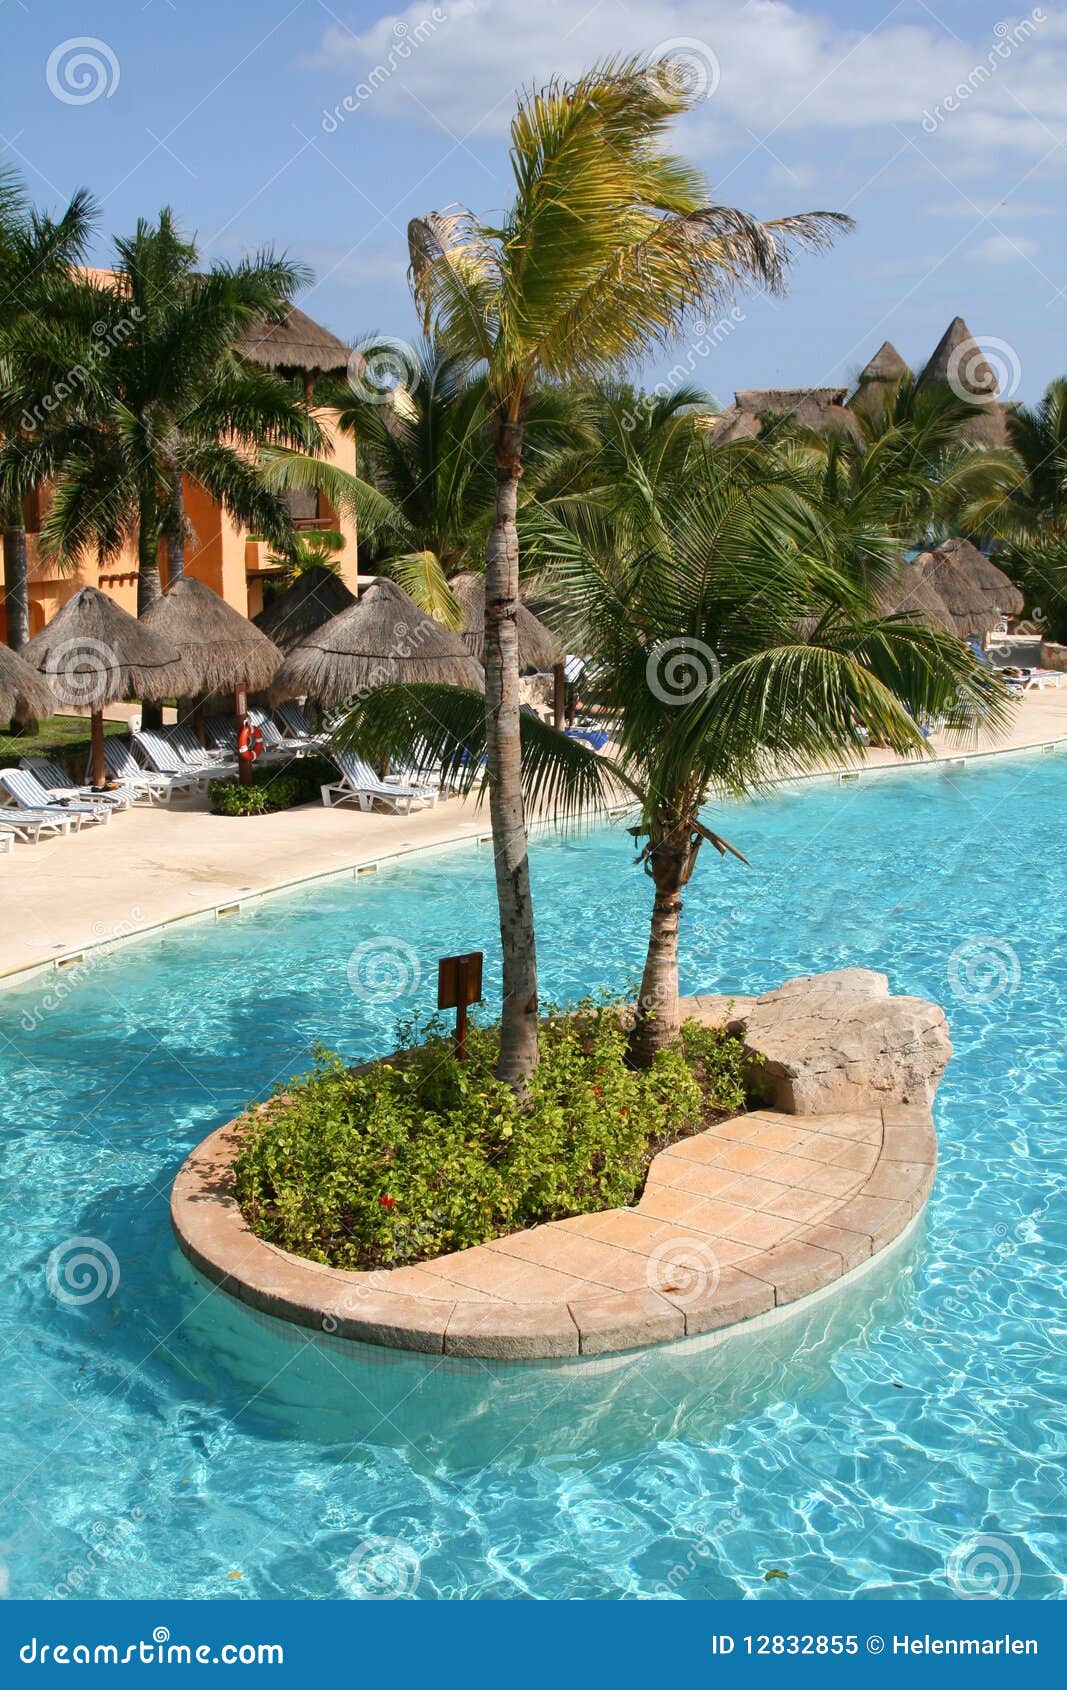 mexico riviera maya iberostar paraiso lindo pool